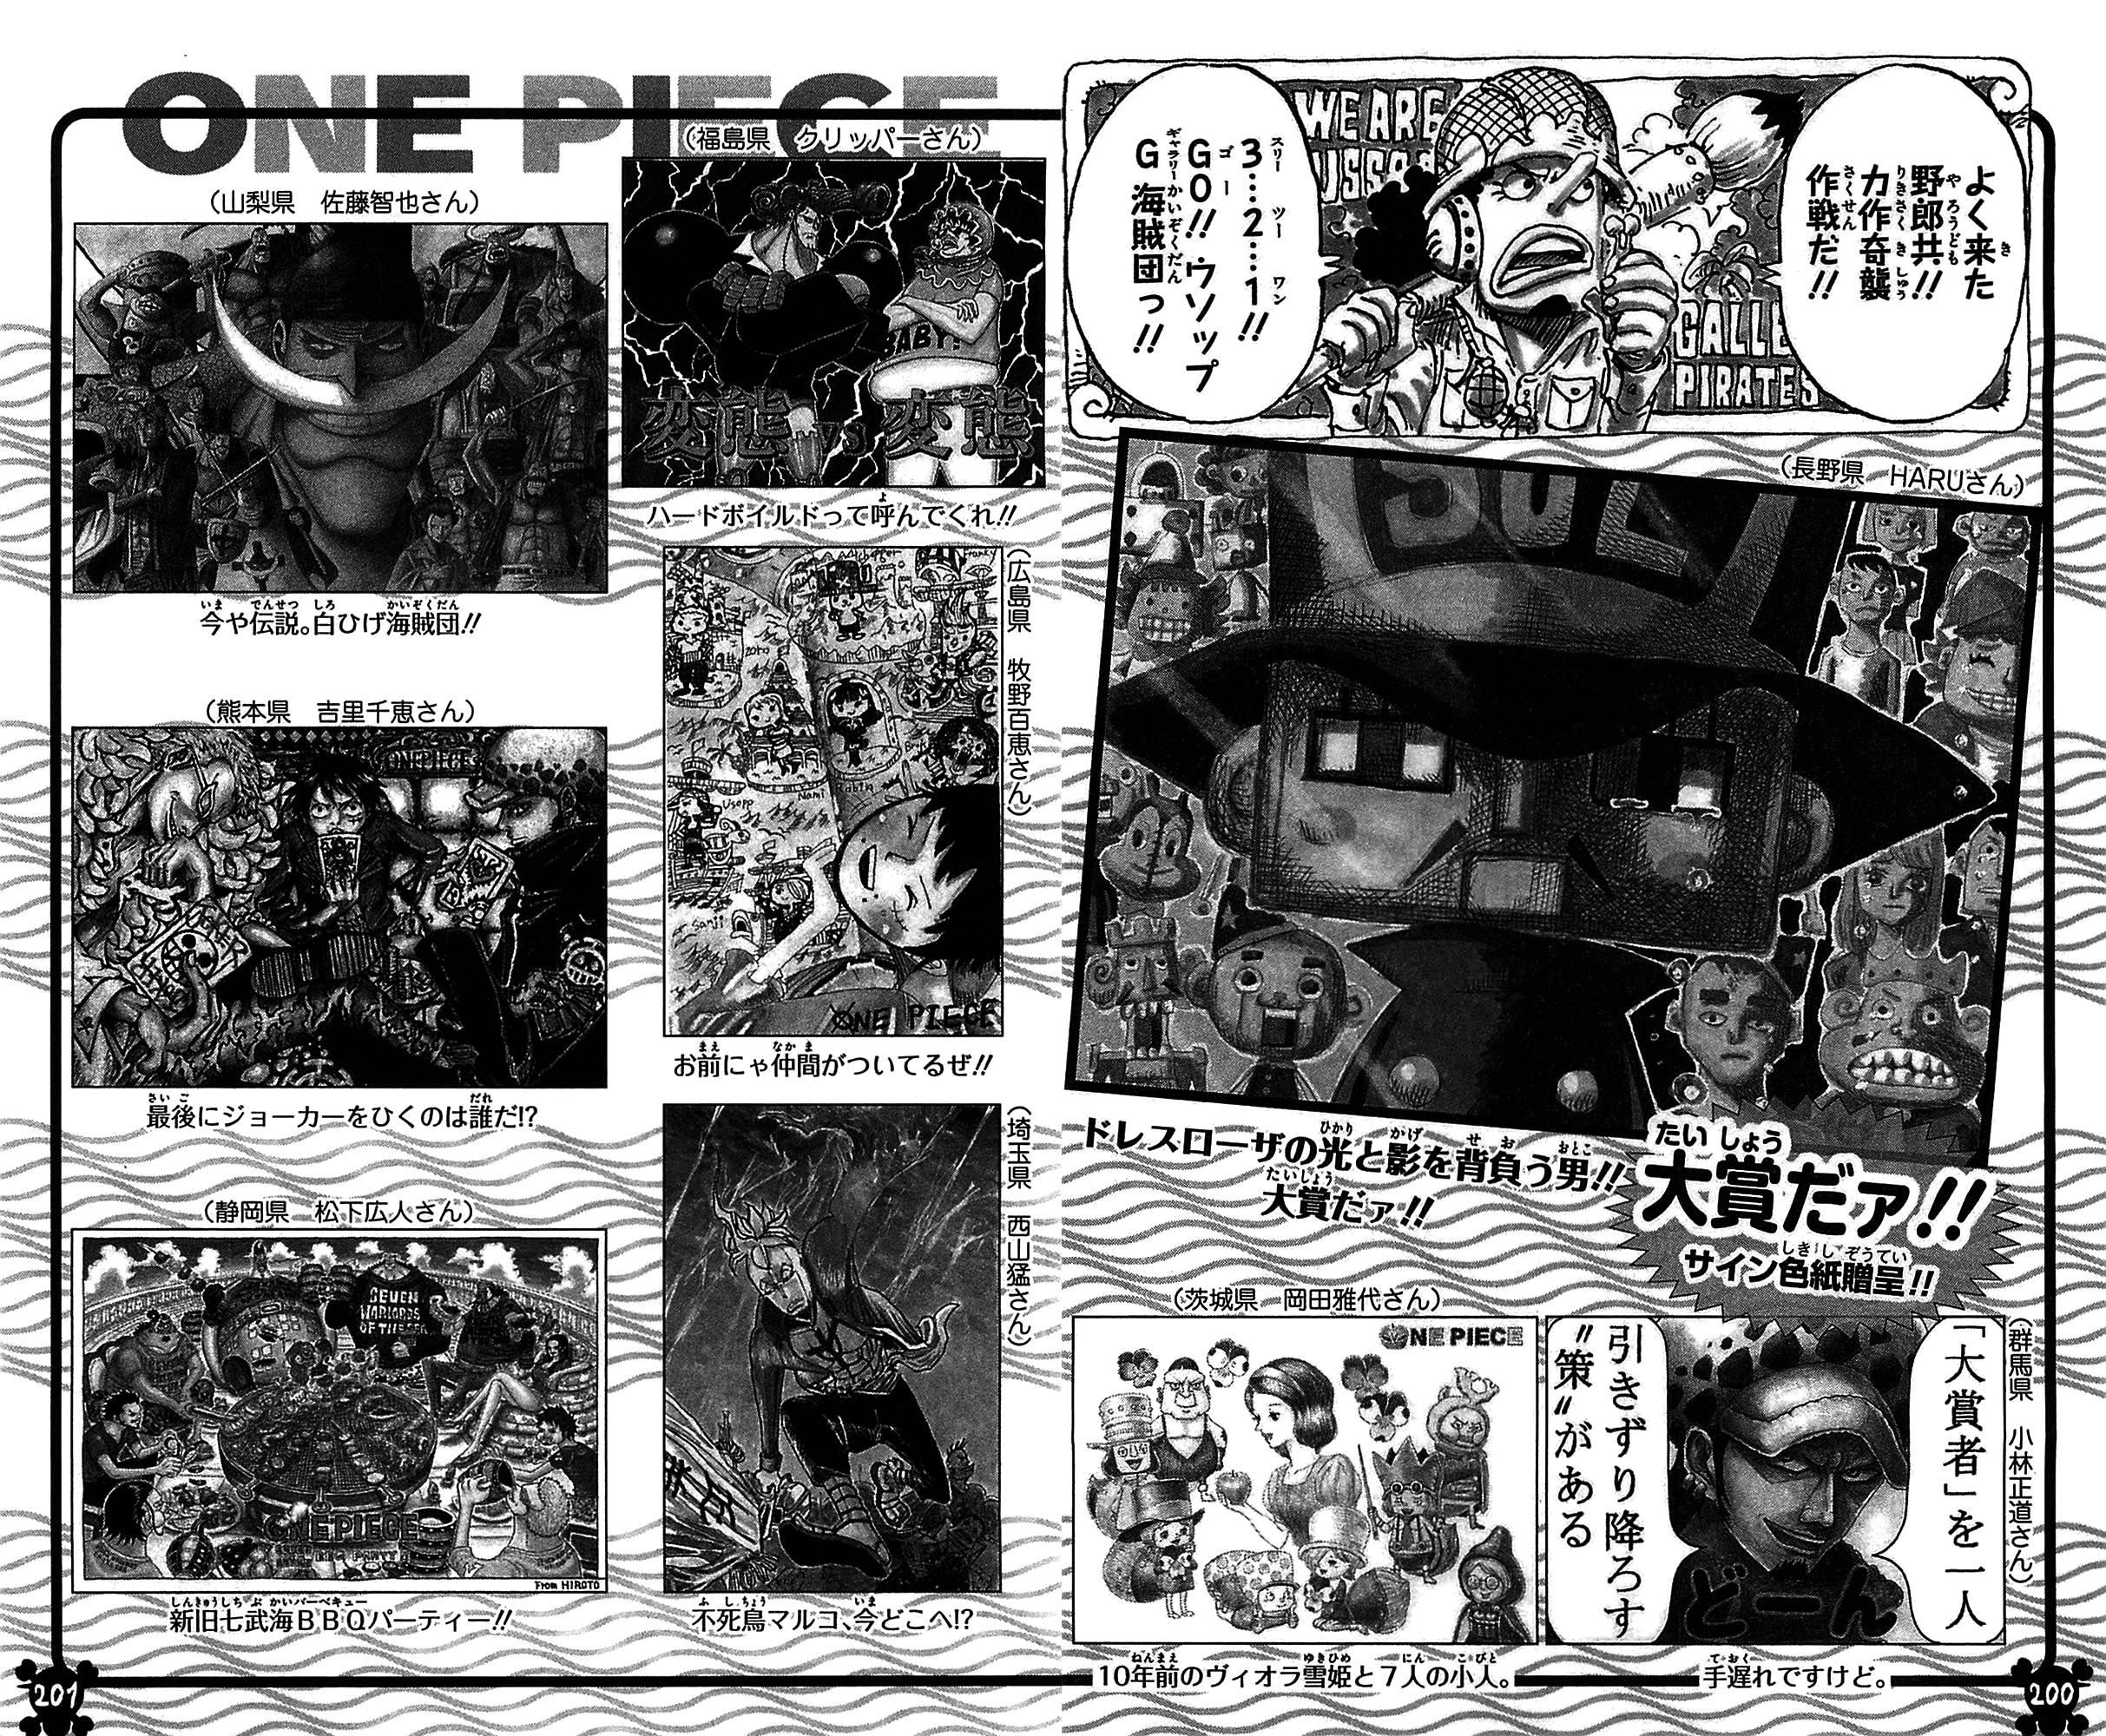 Volume 75 | One Piece Wiki | Fandom